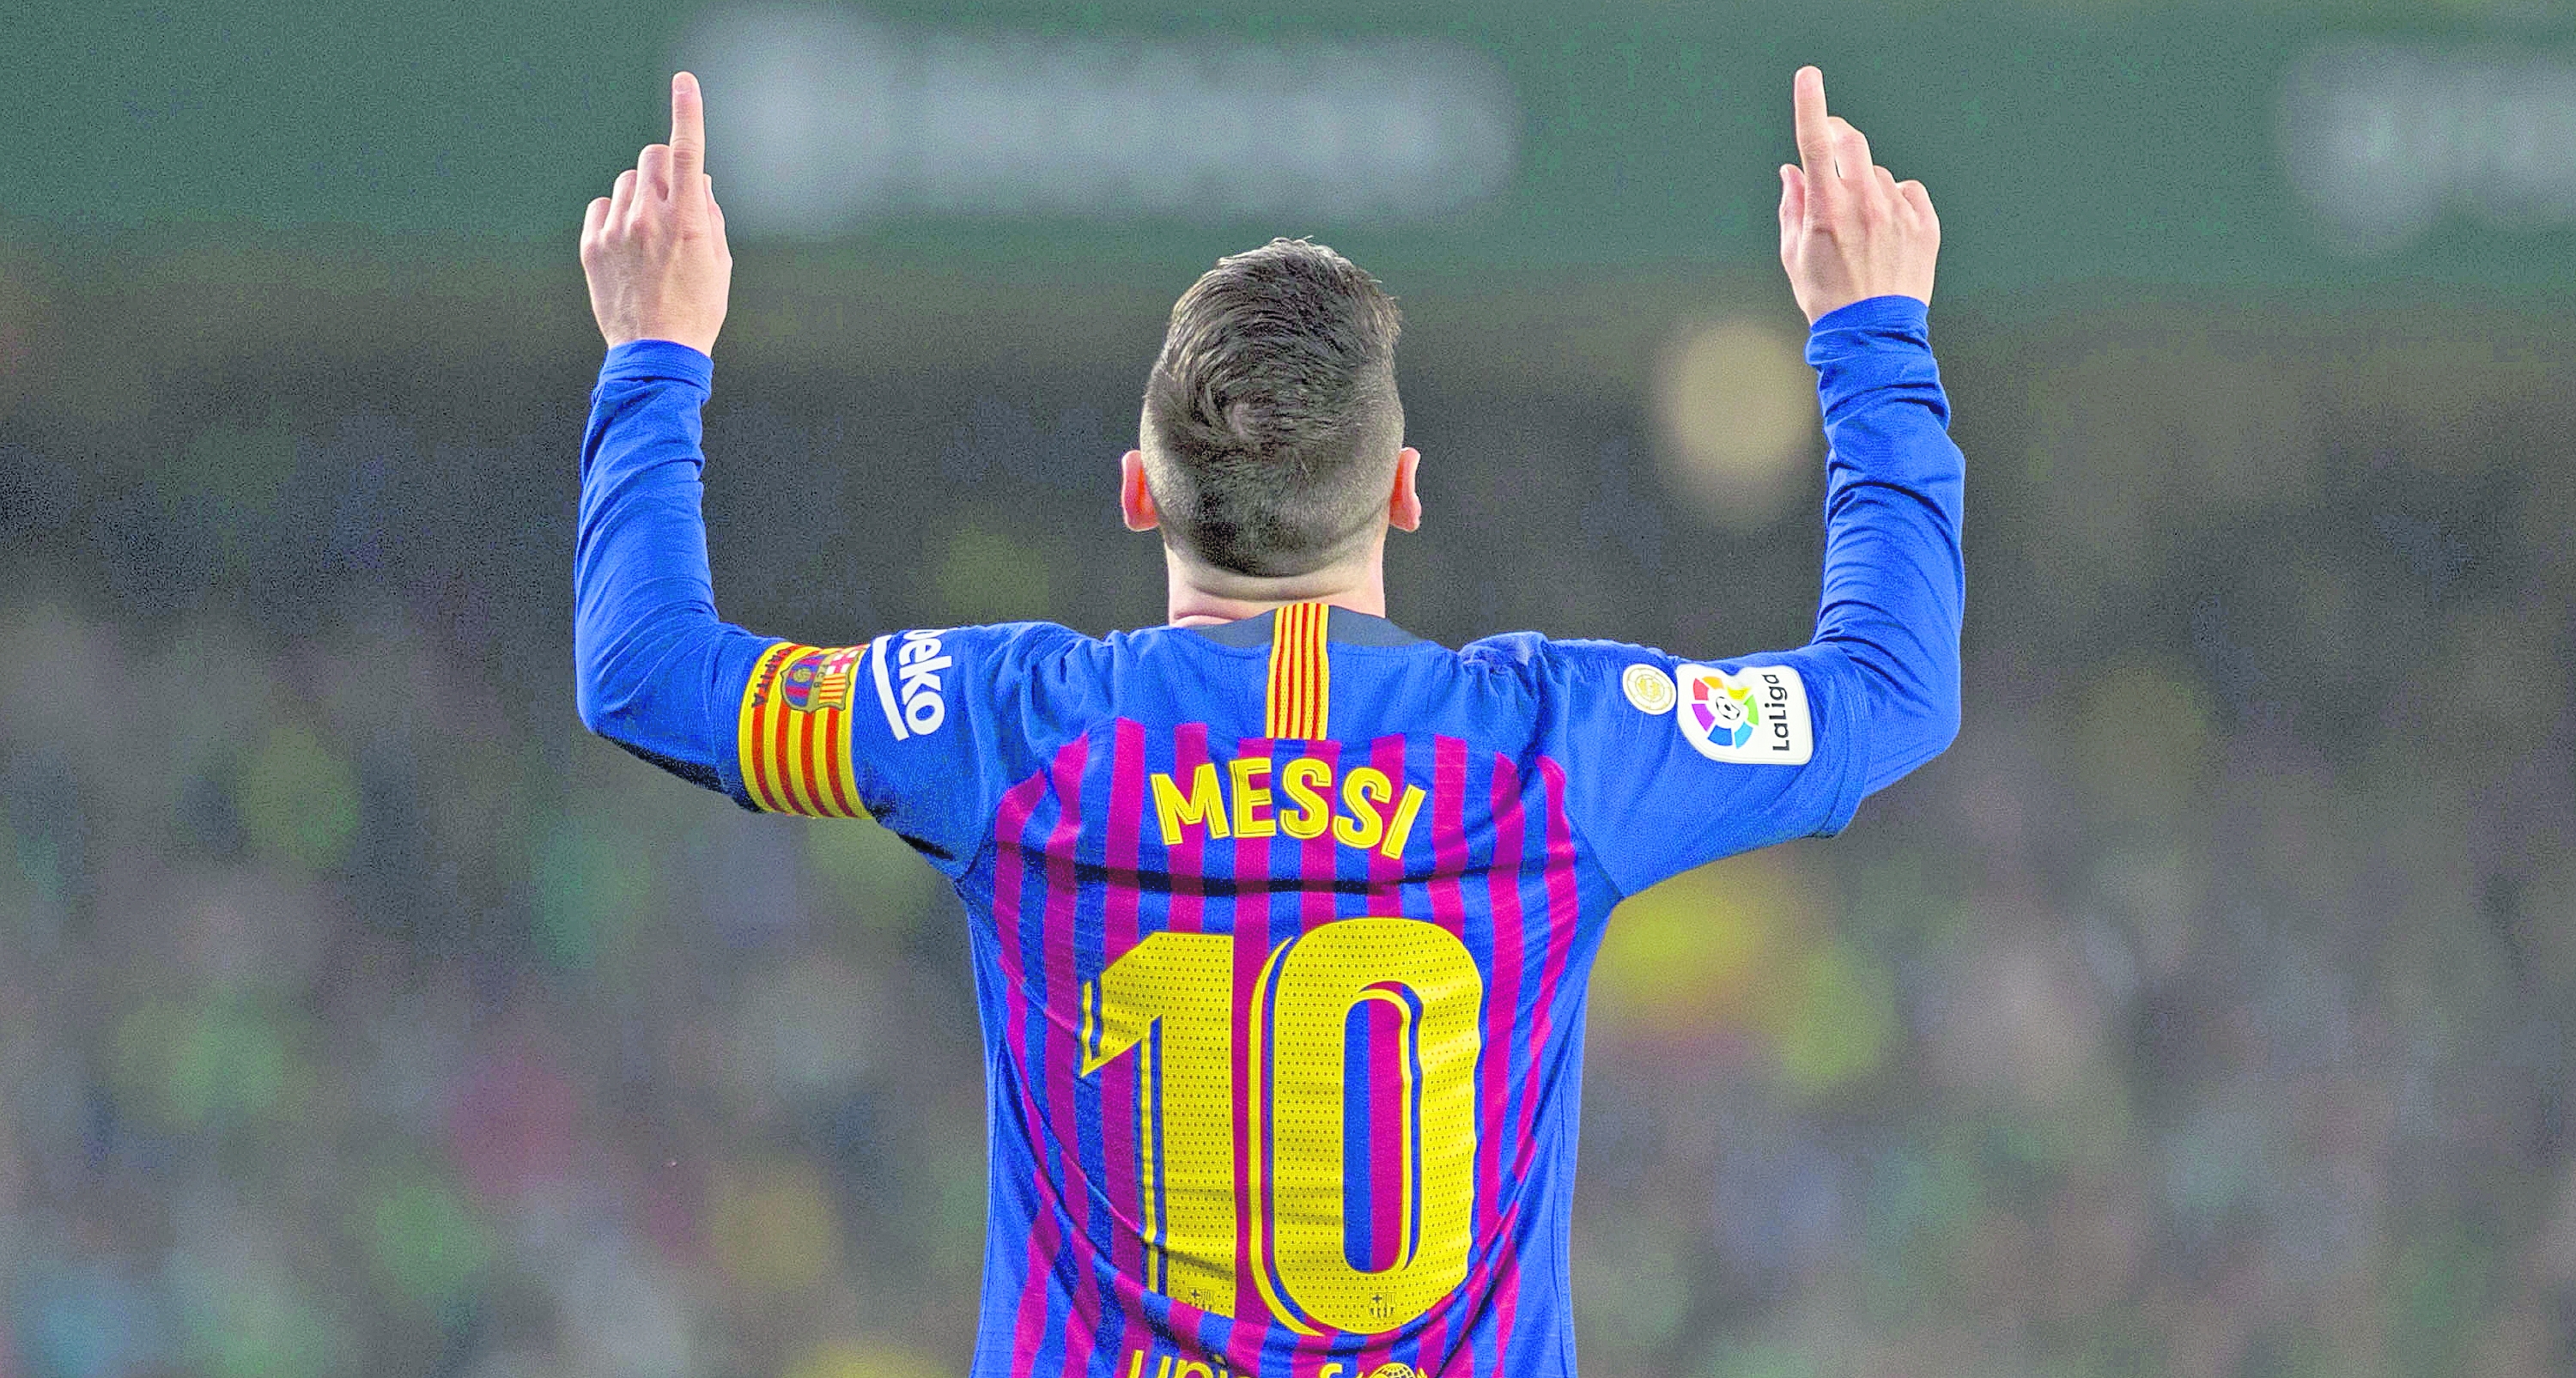 Leo Messi estaría cerca del volver al Barcelona, según periodista argentina. (Foto Prensa Libre: Hemeroteca PL)